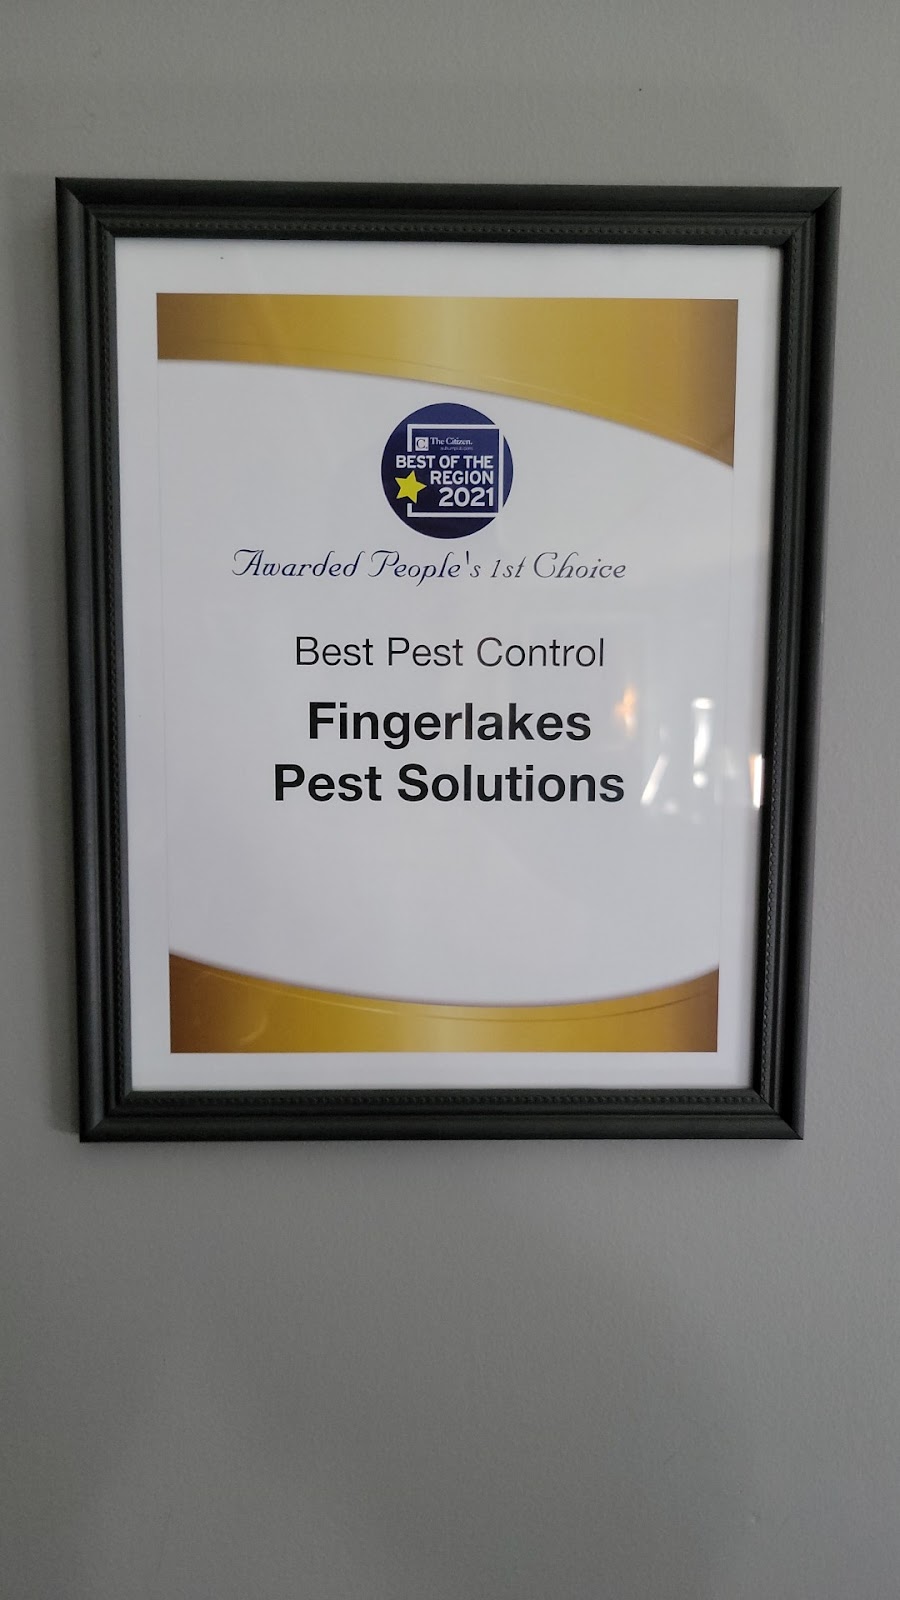 Fingerlakes Pest Solutions